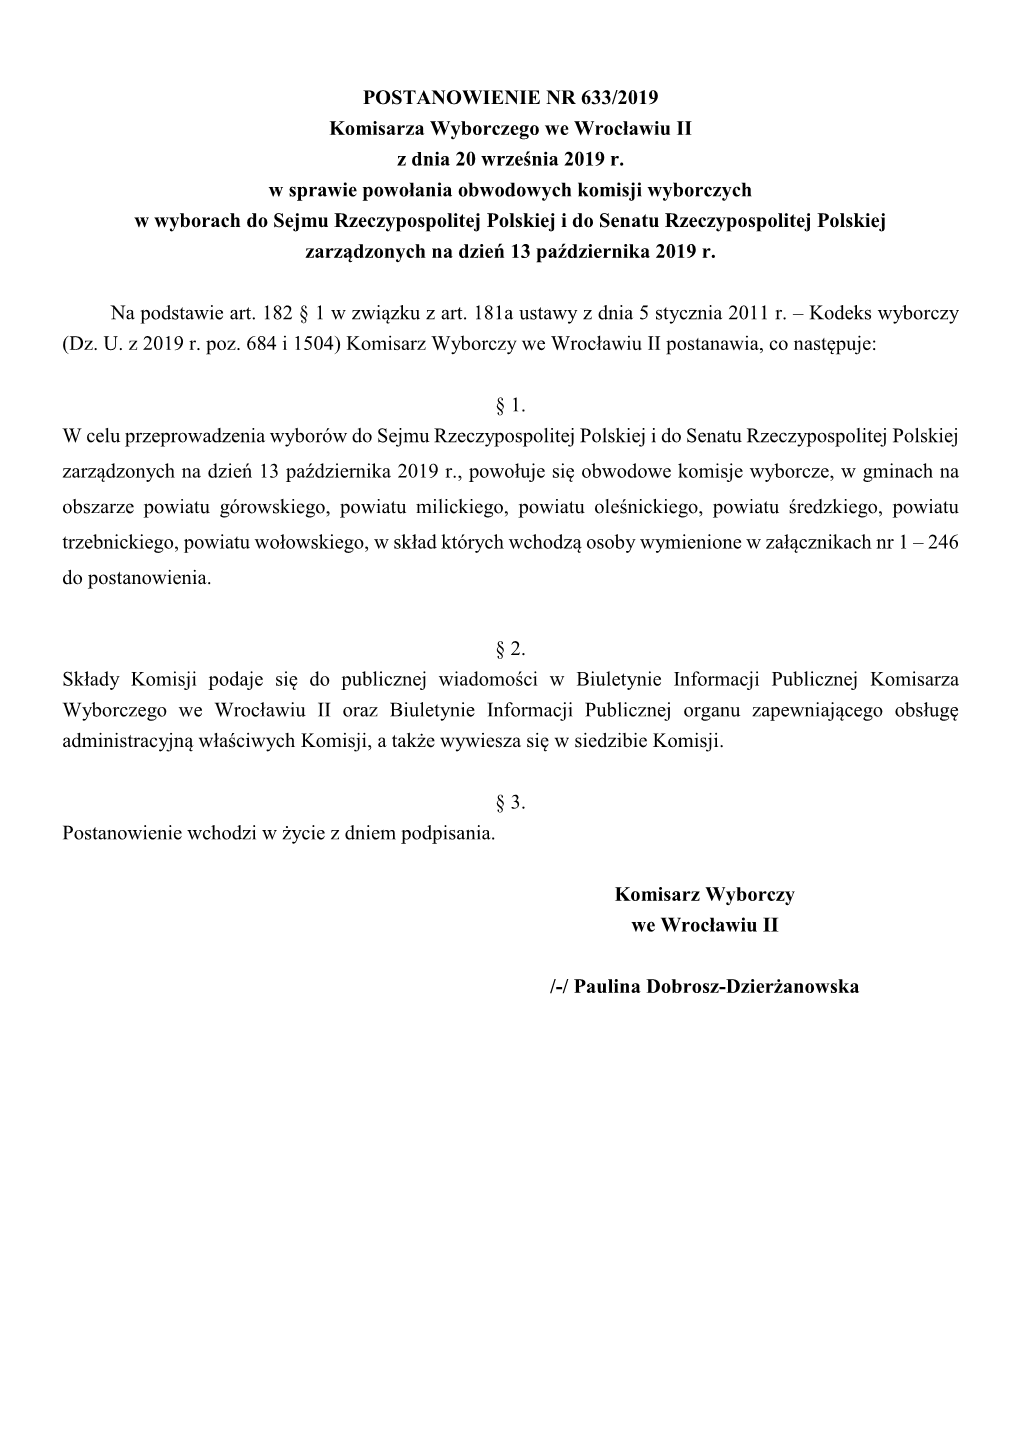 POSTANOWIENIE NR 633/2019 Komisarza Wyborczego We Wrocławiu II Z Dnia 20 Września 2019 R